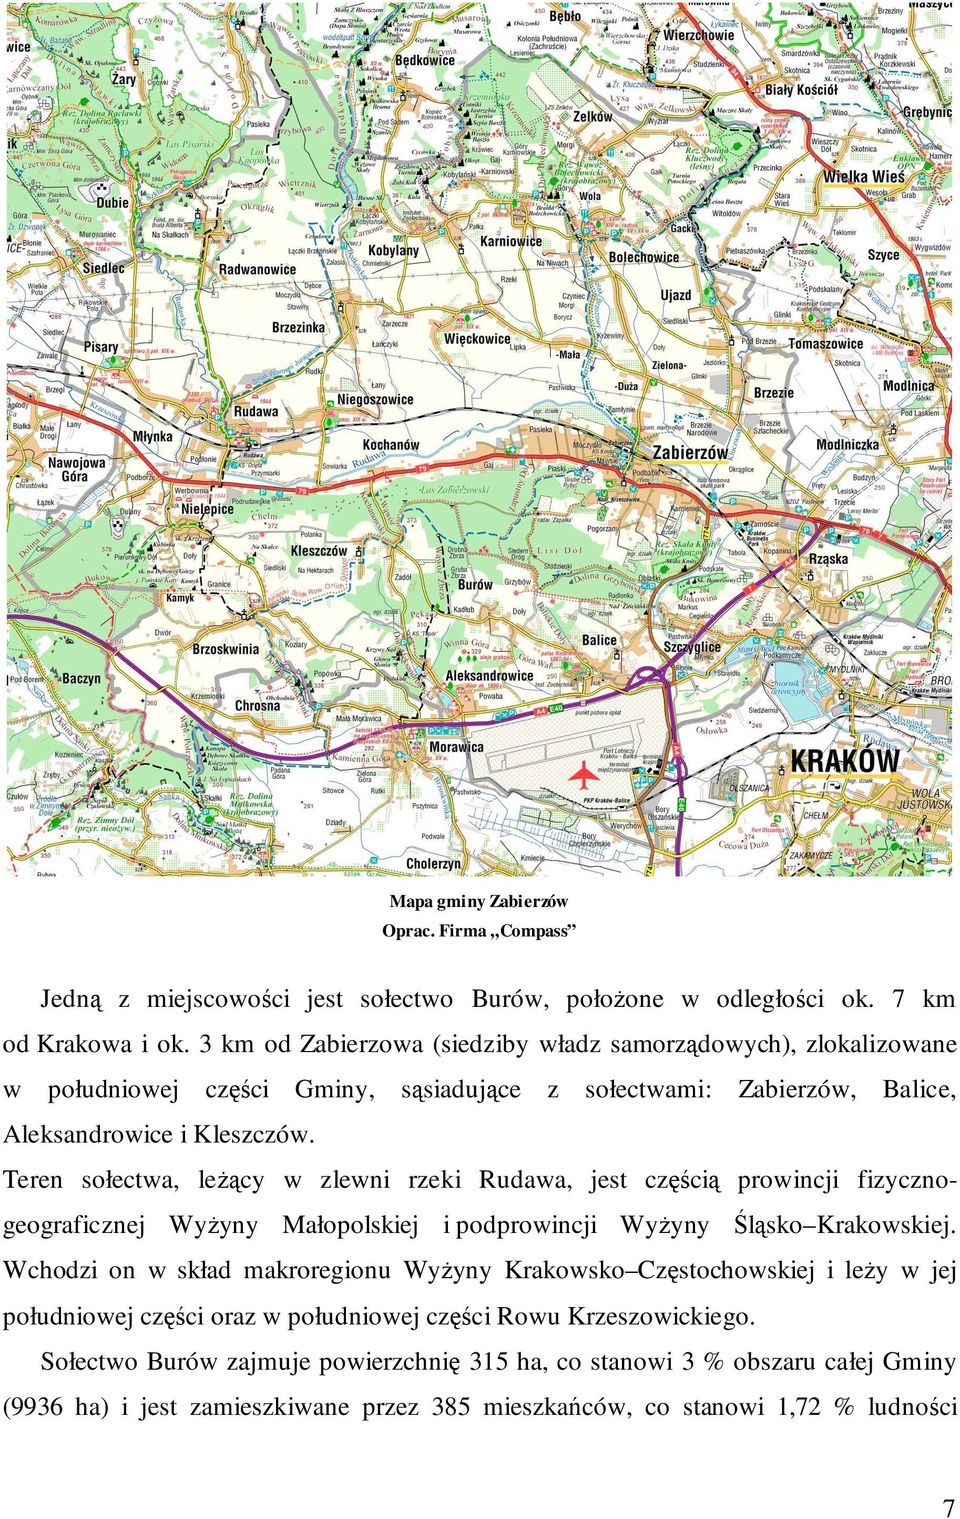 Teren sołectwa, leŝący w zlewni rzeki Rudawa, jest częścią prowincji fizycznogeograficznej WyŜyny Małopolskiej i podprowincji WyŜyny Śląsko Krakowskiej.